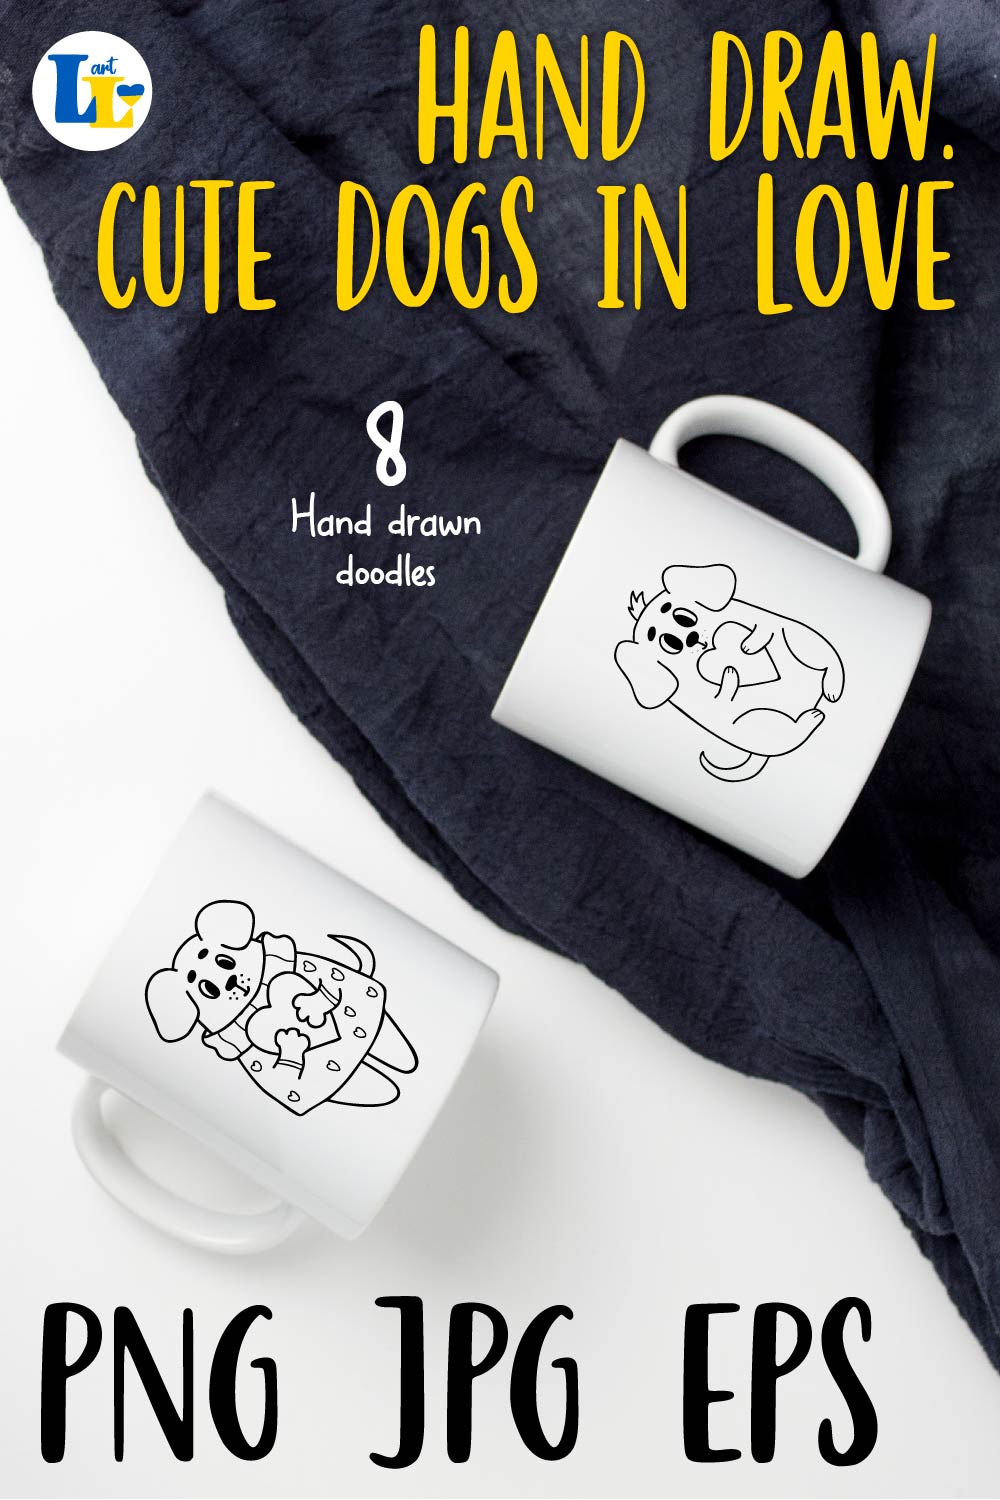 Cute Dog in Love Valentine Hand Drawn Set pinterest image.